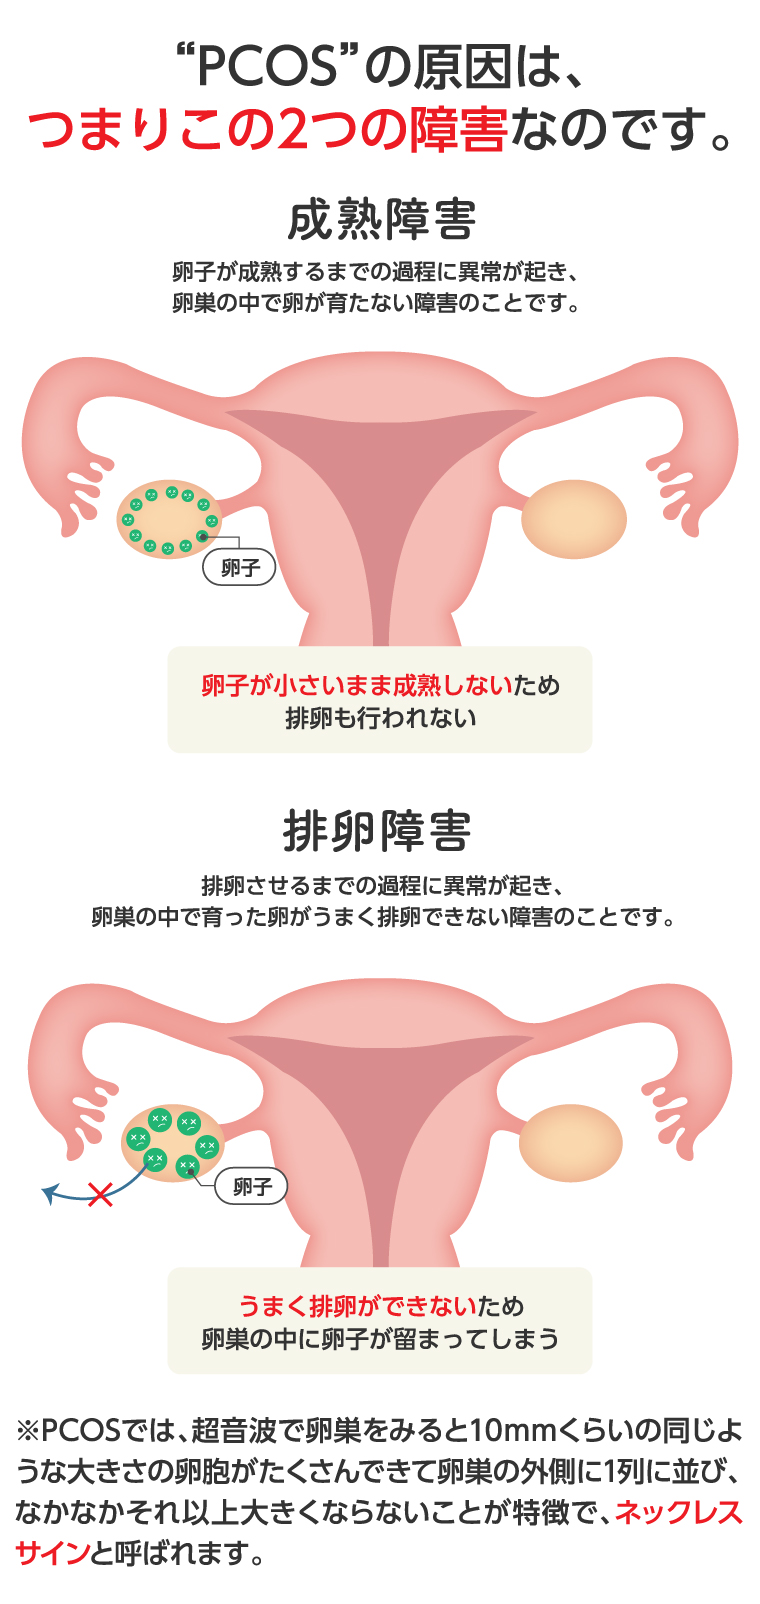 多 嚢胞 性 卵巣 症候群 流産 し やすい